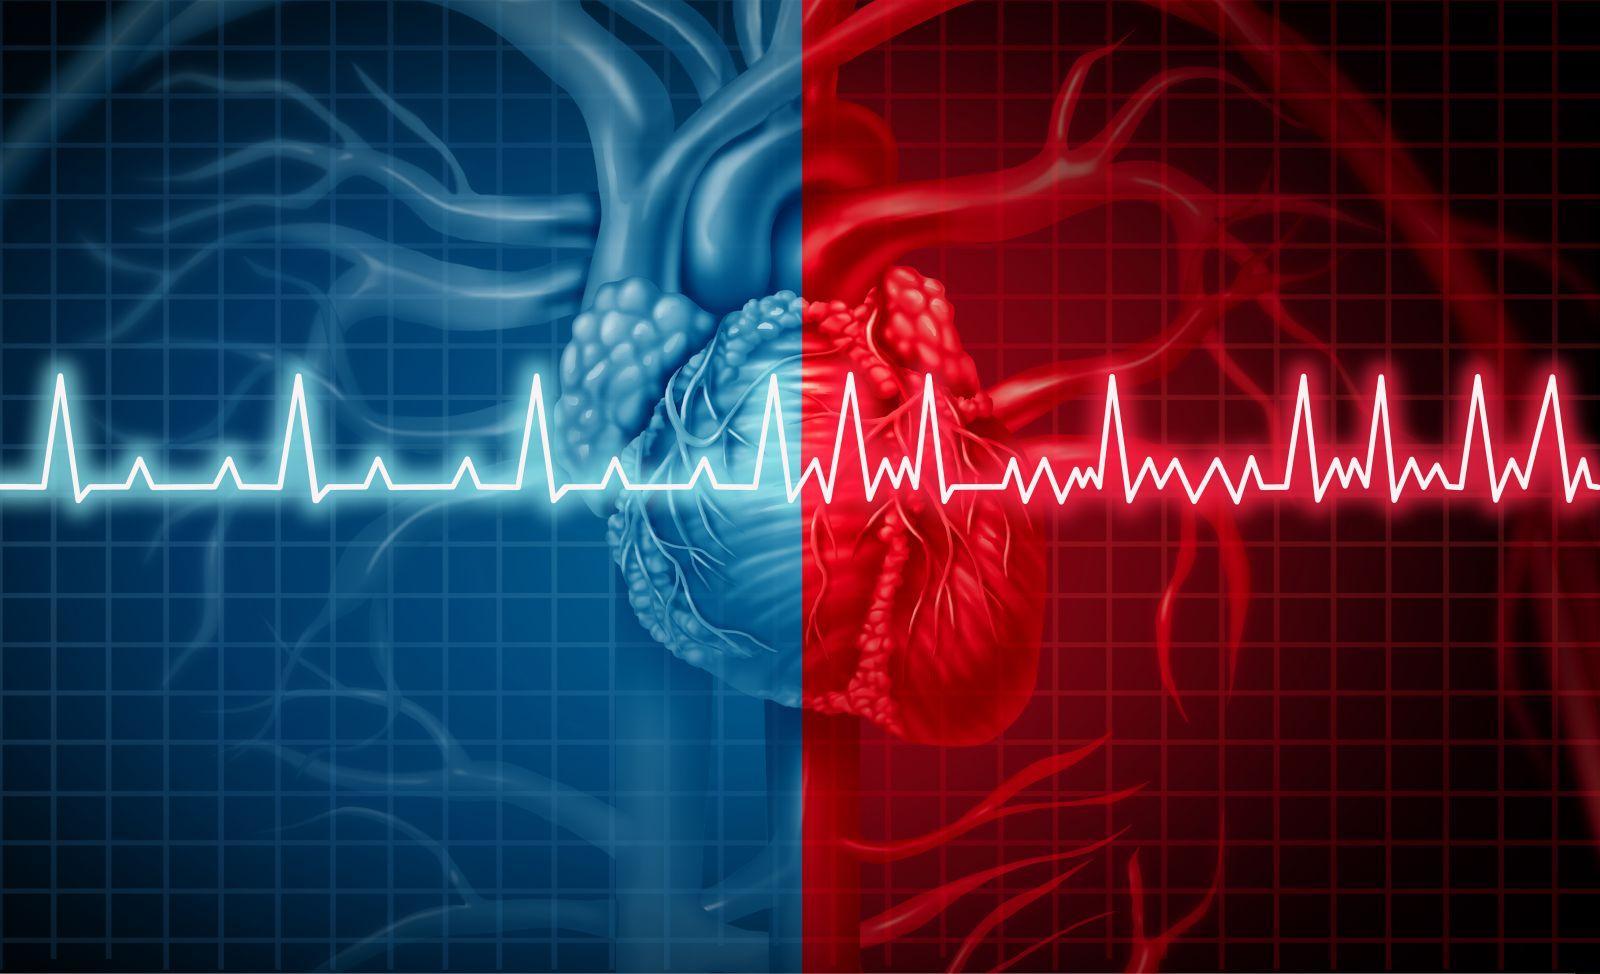 Heart healthy:हृदय रोगों से बढ़ता कोरोना का खतरा, डाइट में इन तत्वों को शामिल हृदय को रखें स्वस्थ